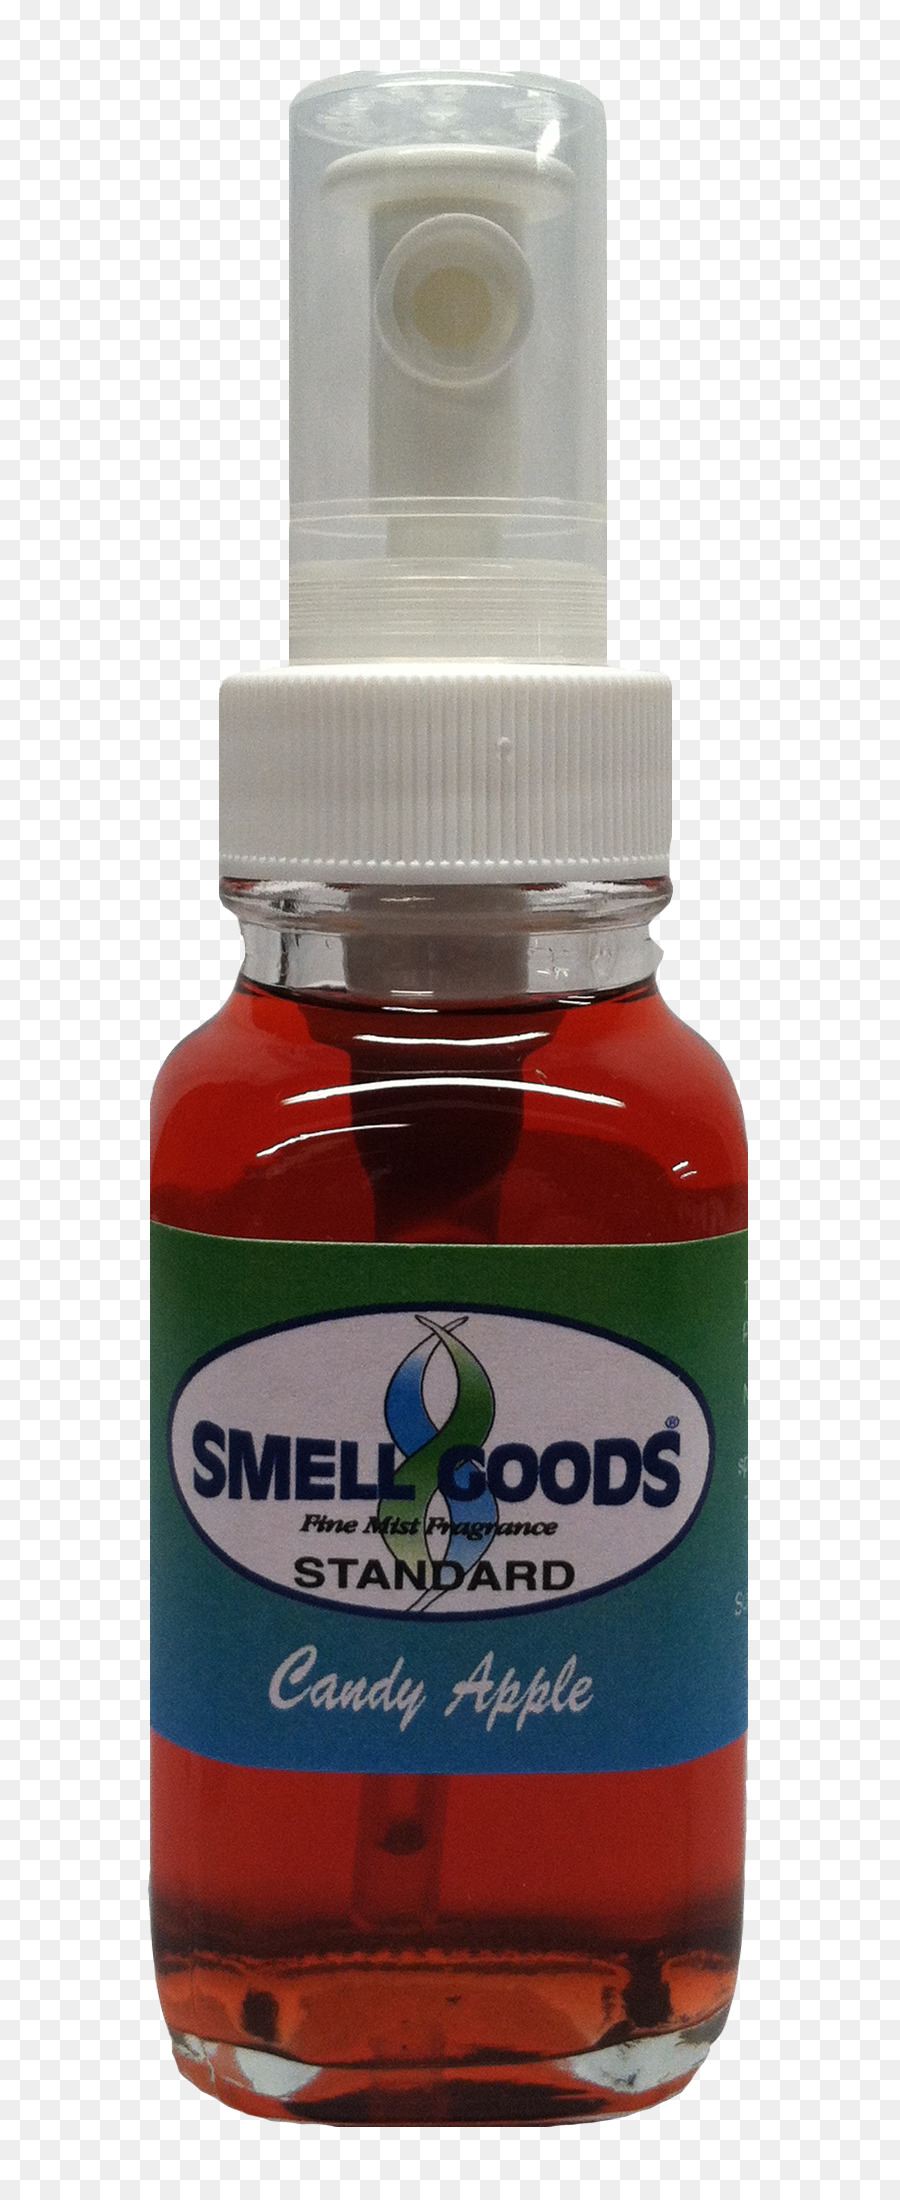 Lösungsmittel in chemischen Reaktionen, die Flüssigkeit Gut Speichern Baby powder Parfüm - Candy Apple